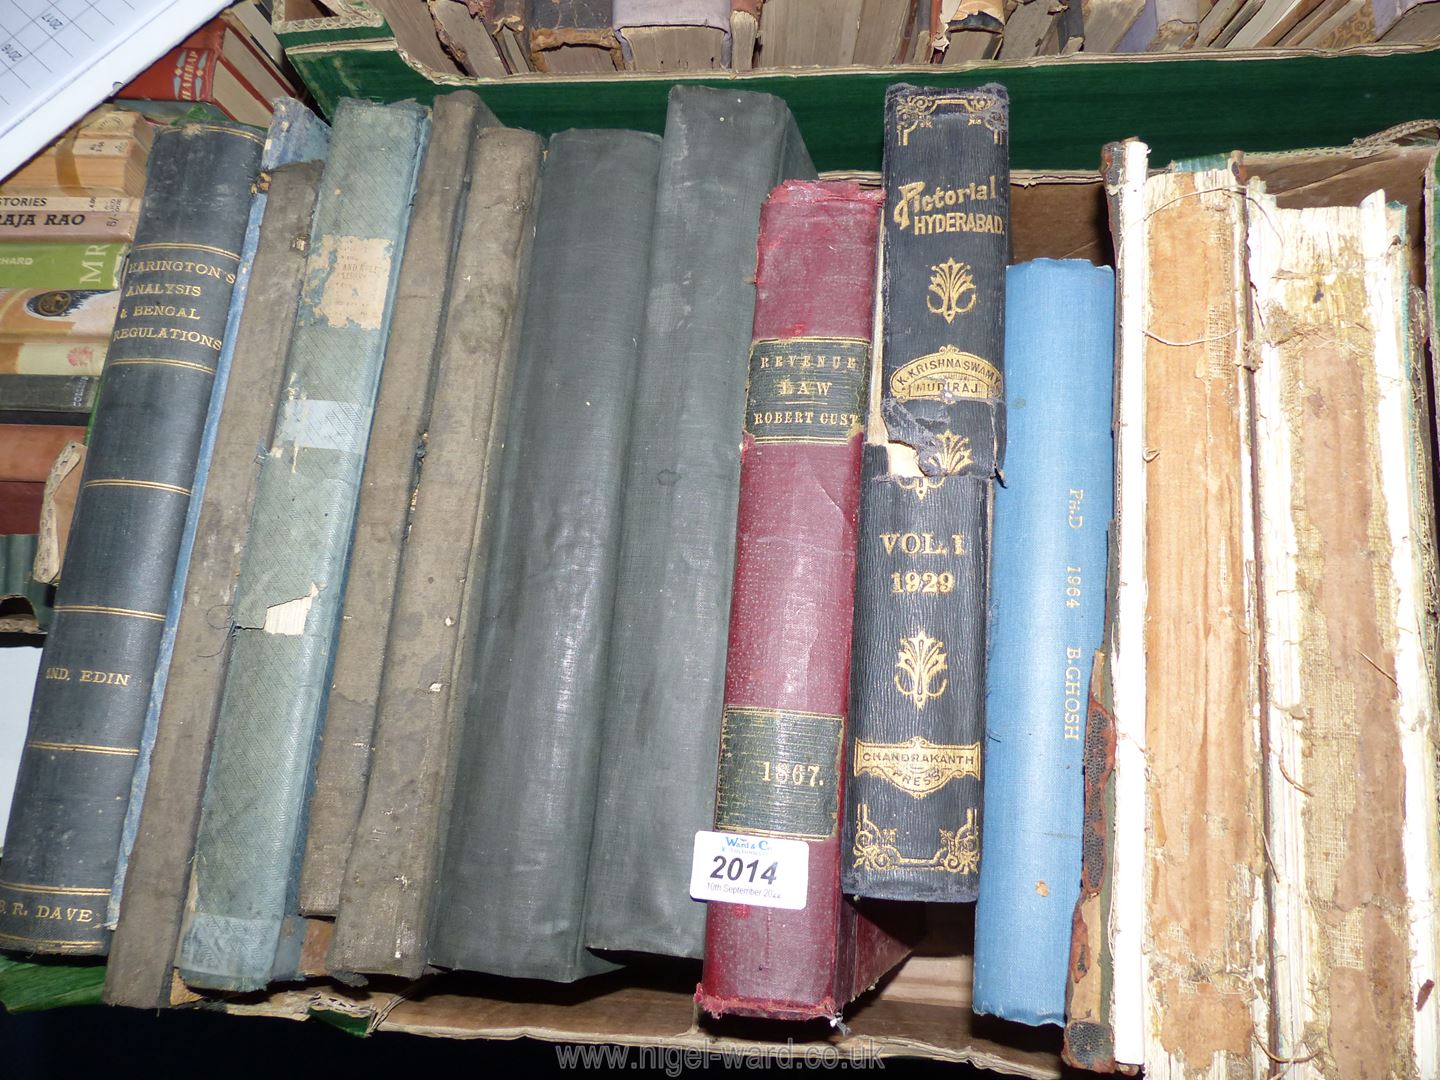 A quantity of books including 'Servant of India', 'Revenue Survey India 1853',